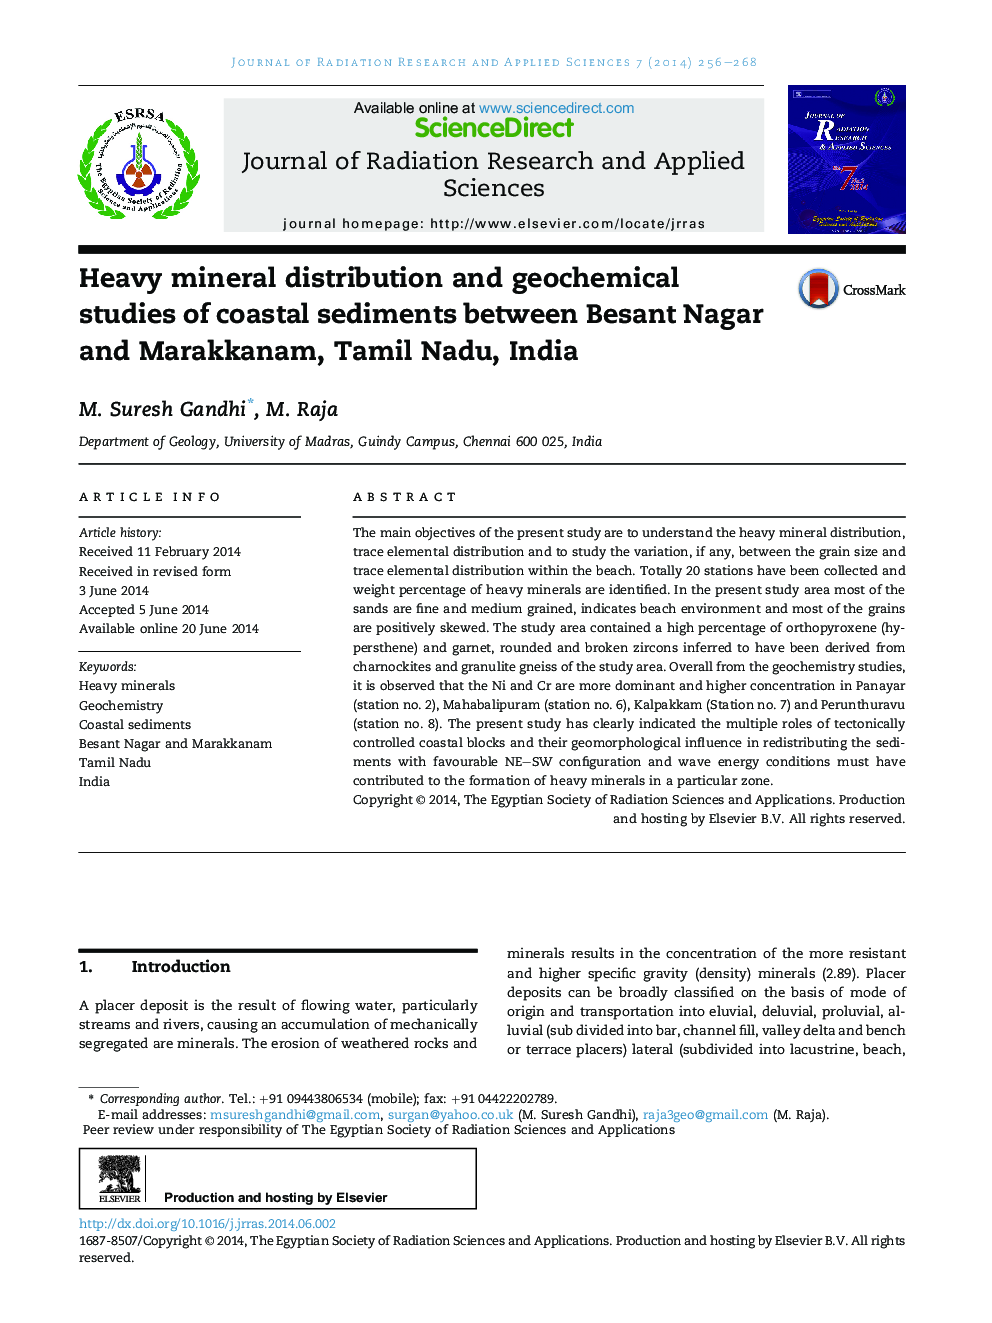 توزیع مواد معدنی سنگین و مطالعات ژئوشیمیایی رسوبات ساحلی بین بسنت ناگار و ماراککنام، تامیل نادو، هند 